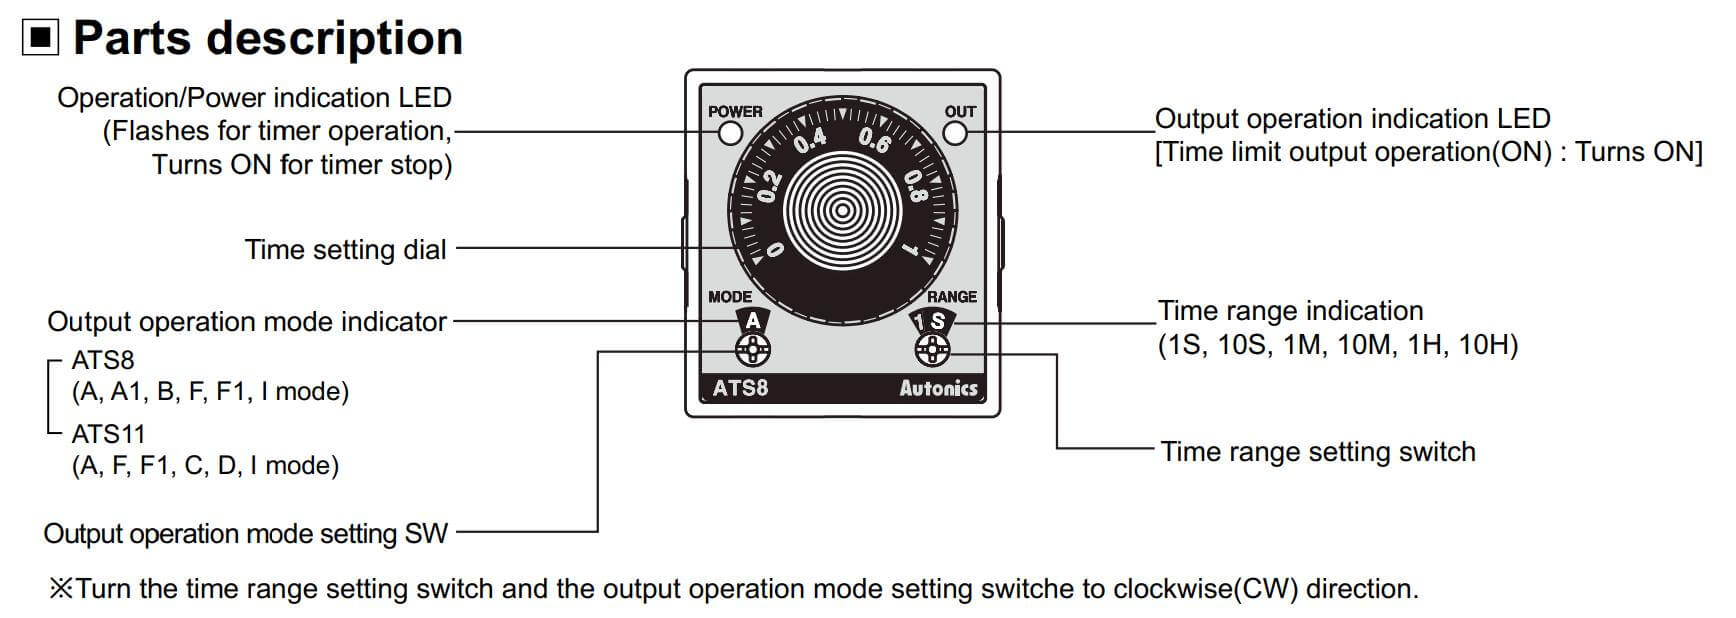 Cấu tạo và Kích thước Autonics ATS8-41: Bộ định thời gian (Timer)